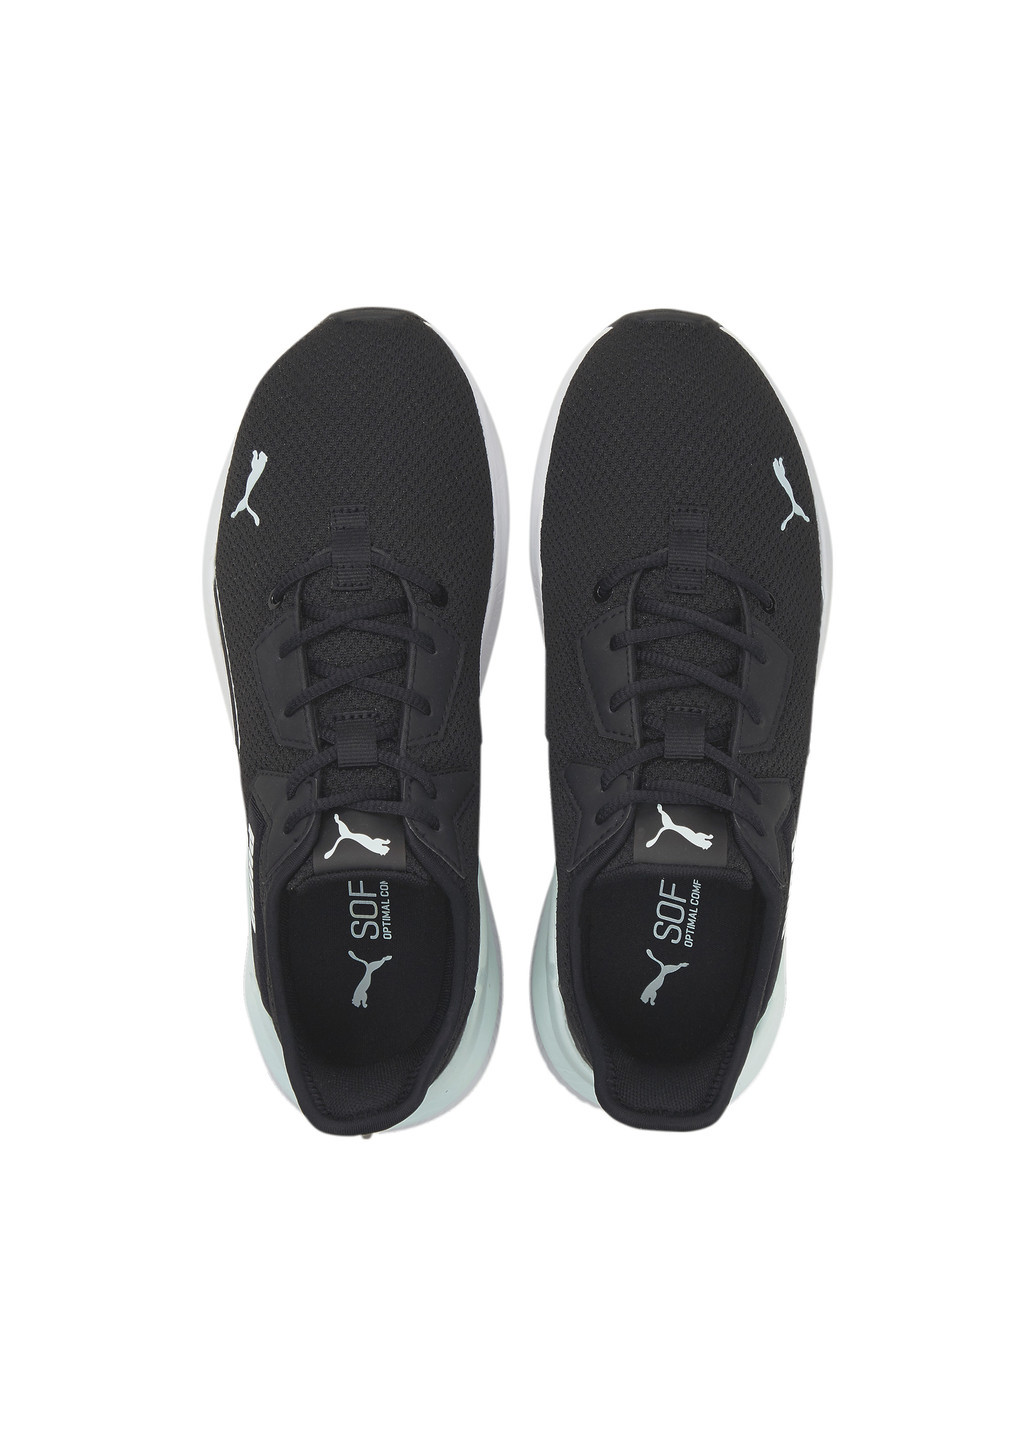 Черные всесезонные кроссовки platinum shimmer women's training shoes Puma